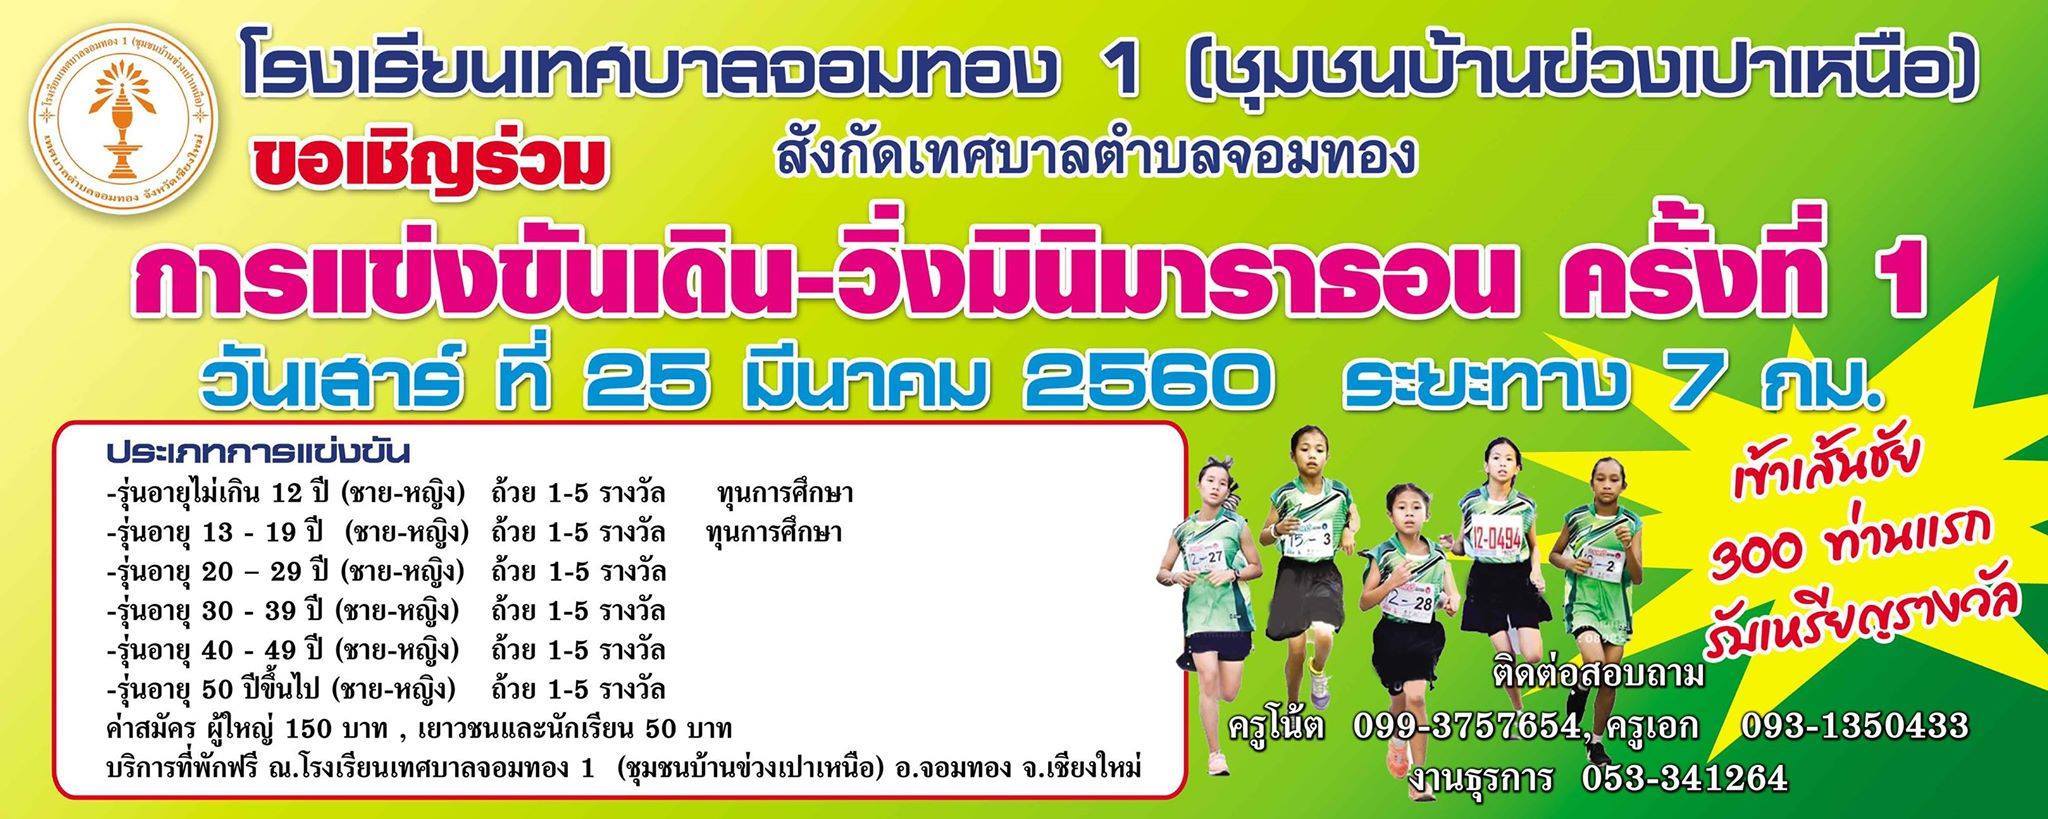 เดิน-วิ่ง มินิมาราธอน โรงเรียนเทศบาลจอมทอง 1 ครั้งที่ 1